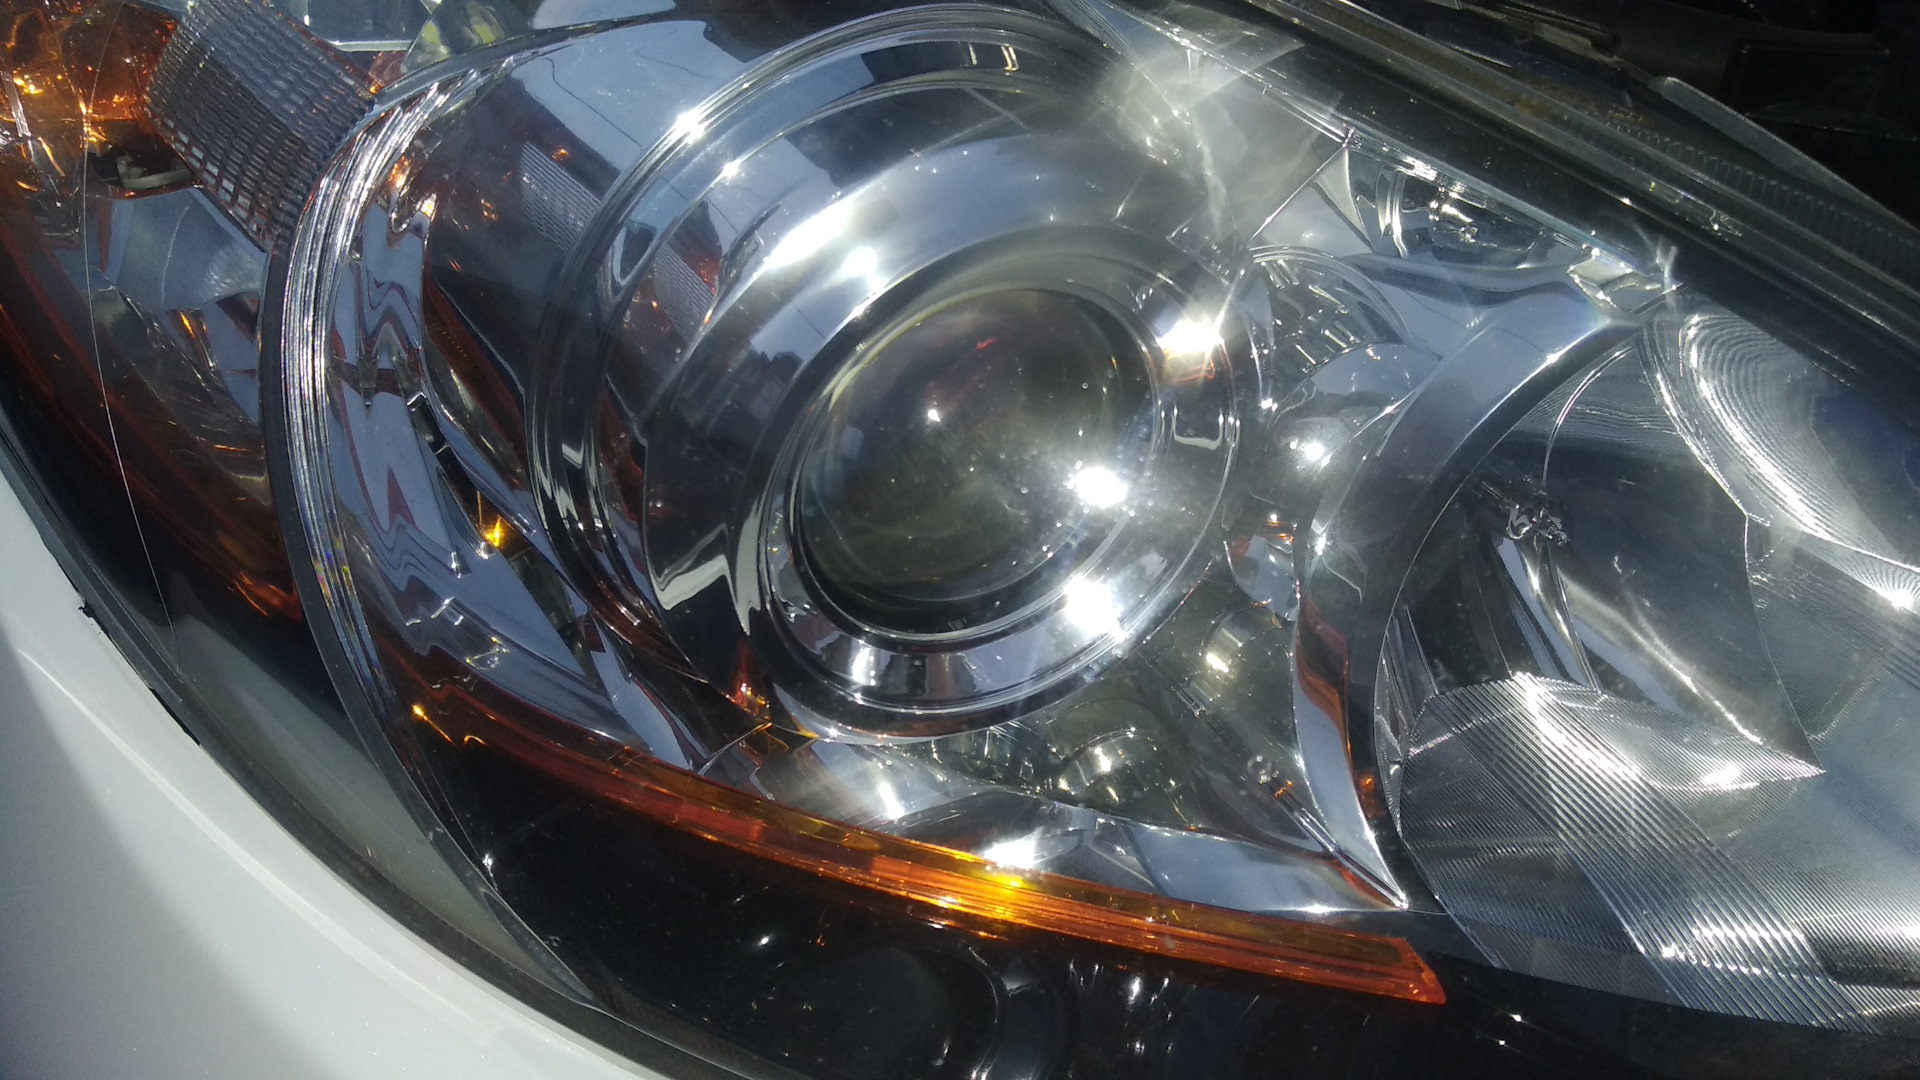 Фары ксенон Mazda 3 BL. Мазда 3 2012 галоген. Ксеноновые лампы на Мазда СХ 5. Headlight Tuning Mazda 3. Ближний свет мазда сх5